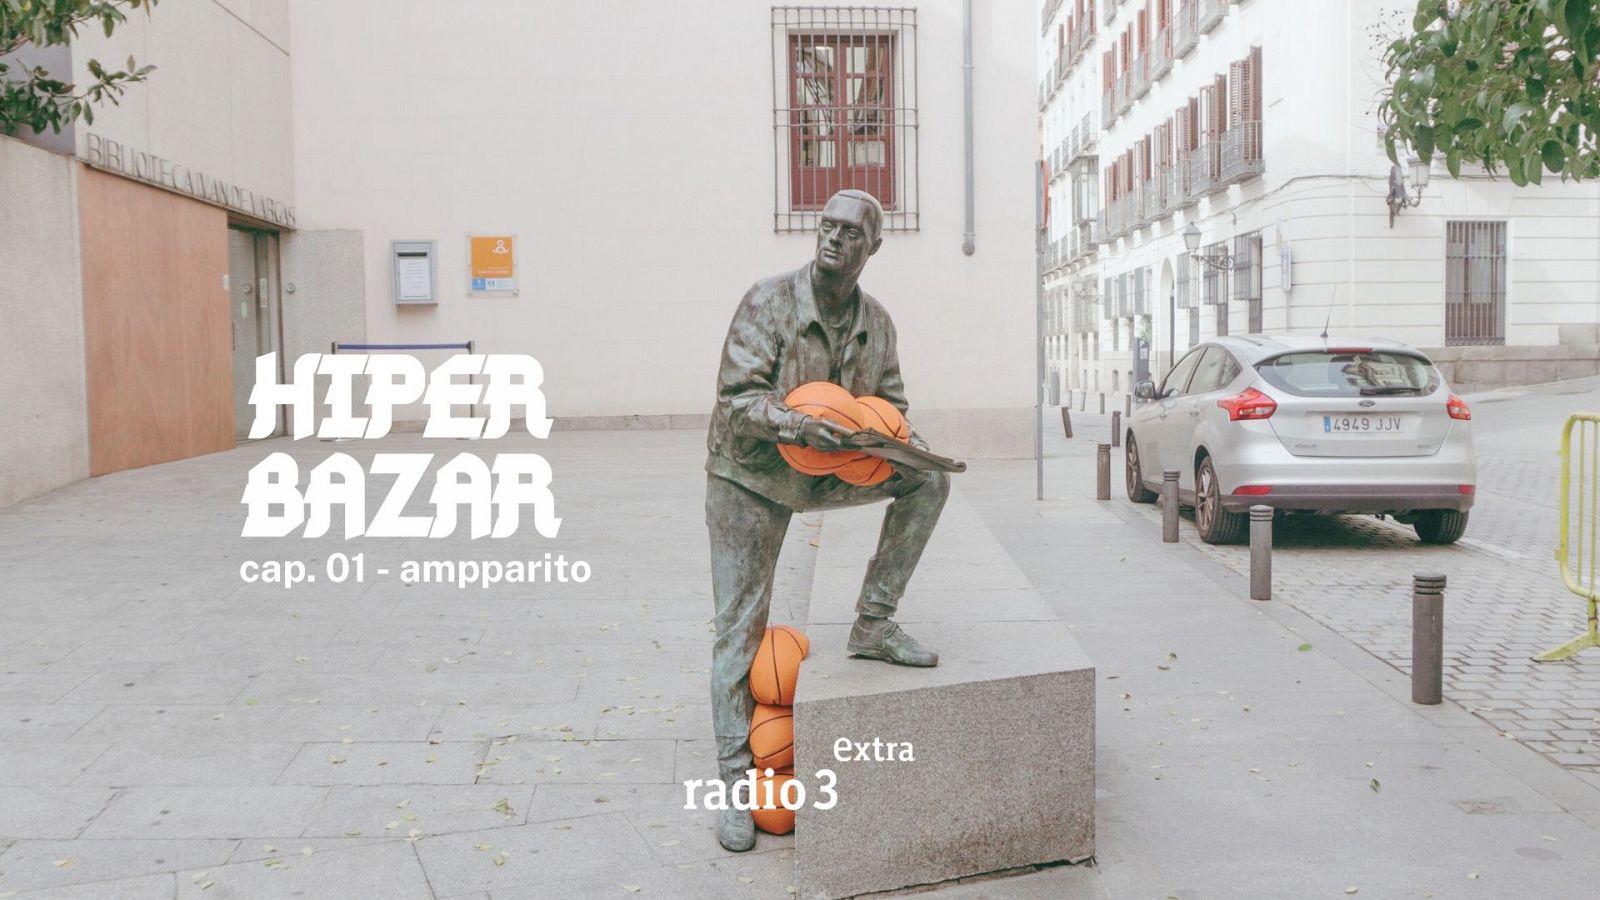 Hiper Bazar - Ampparito - 01/08/22